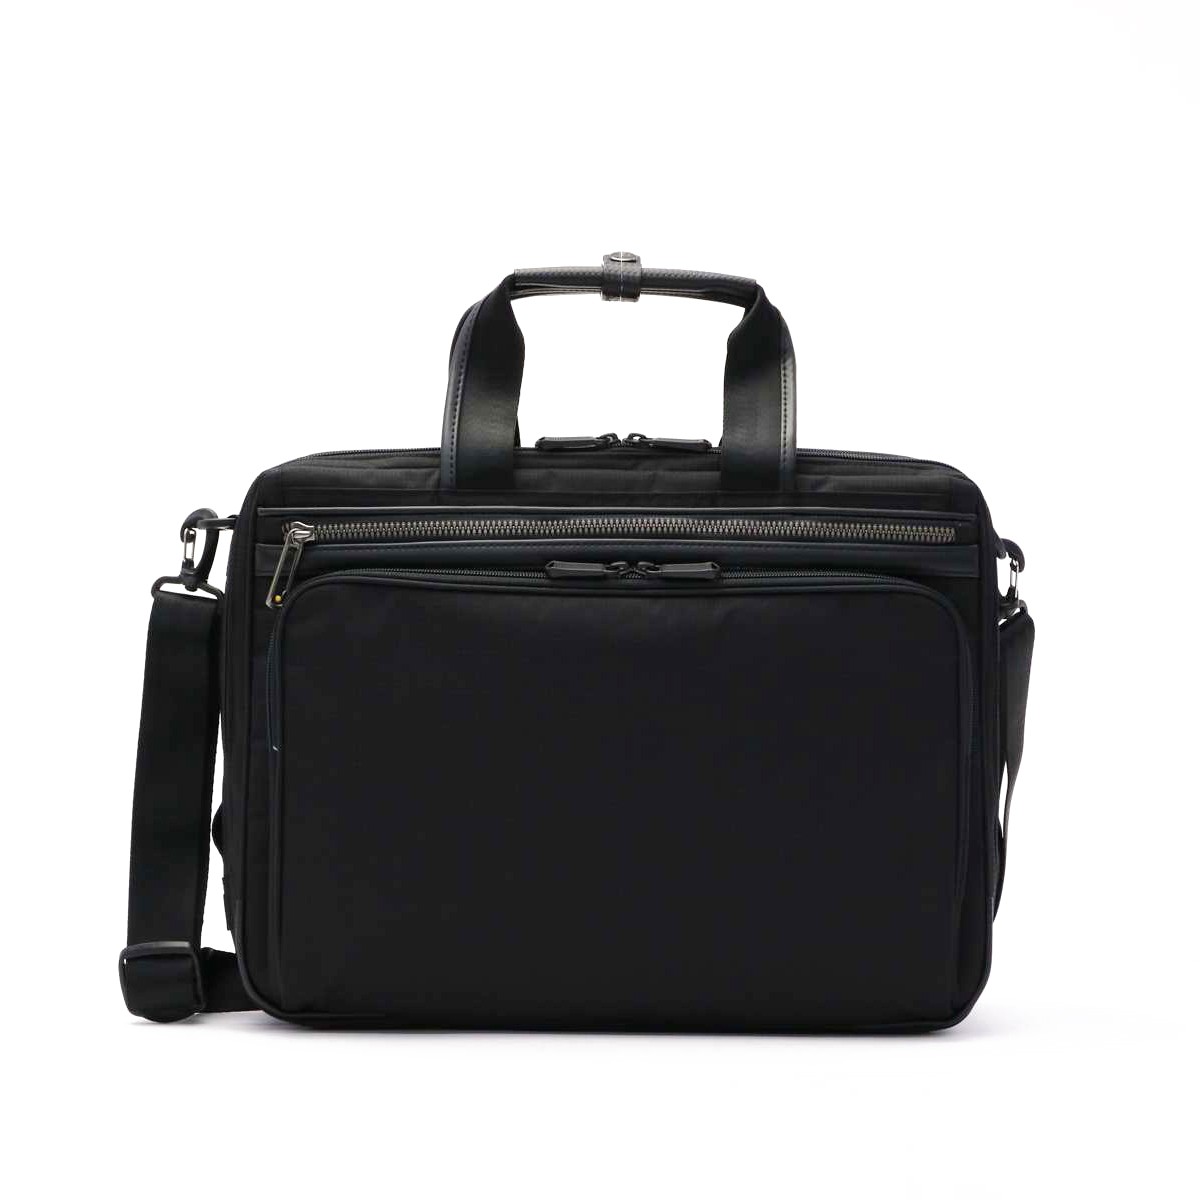 Acegene エースジーン フレックスライトフィット フレックスライト ビジネスバッグ Flex Lite Fit 2way ブリーフケース メンズ ギャレリア Bag Luggage 通販 Paypayモール